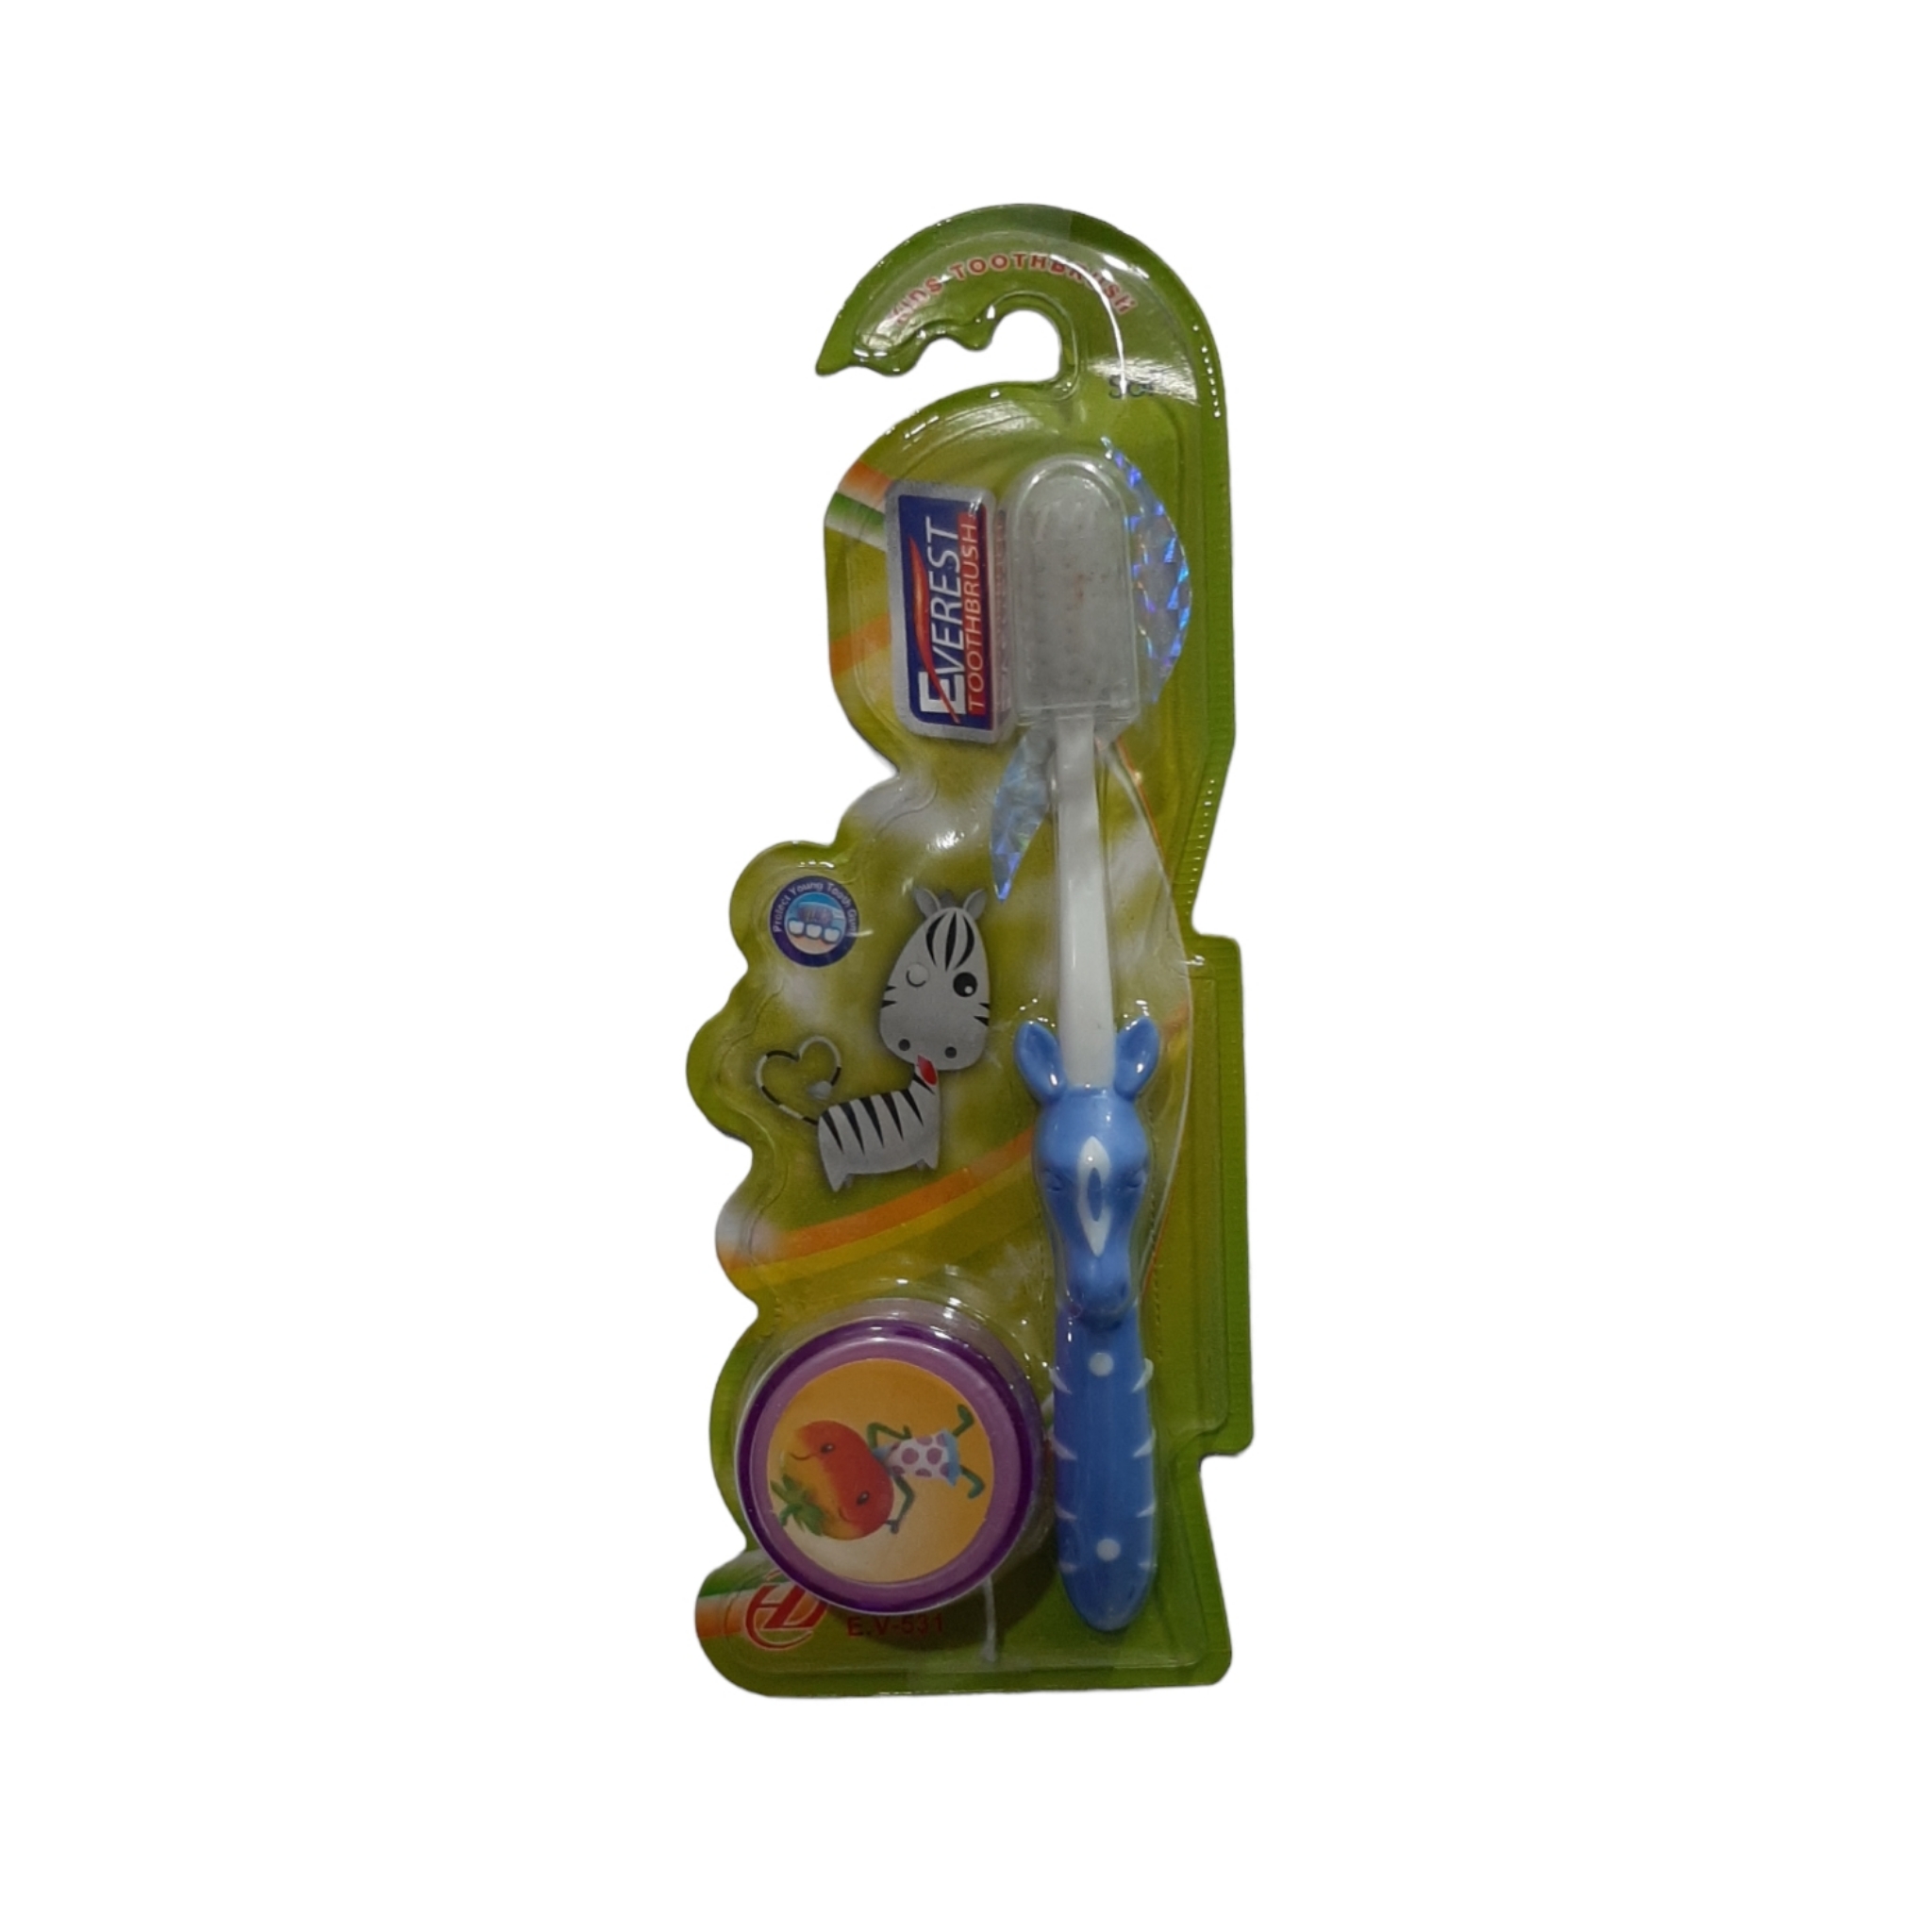 مسواک کودک اورست مدل  برس نرم کد 01 به همراه یویو